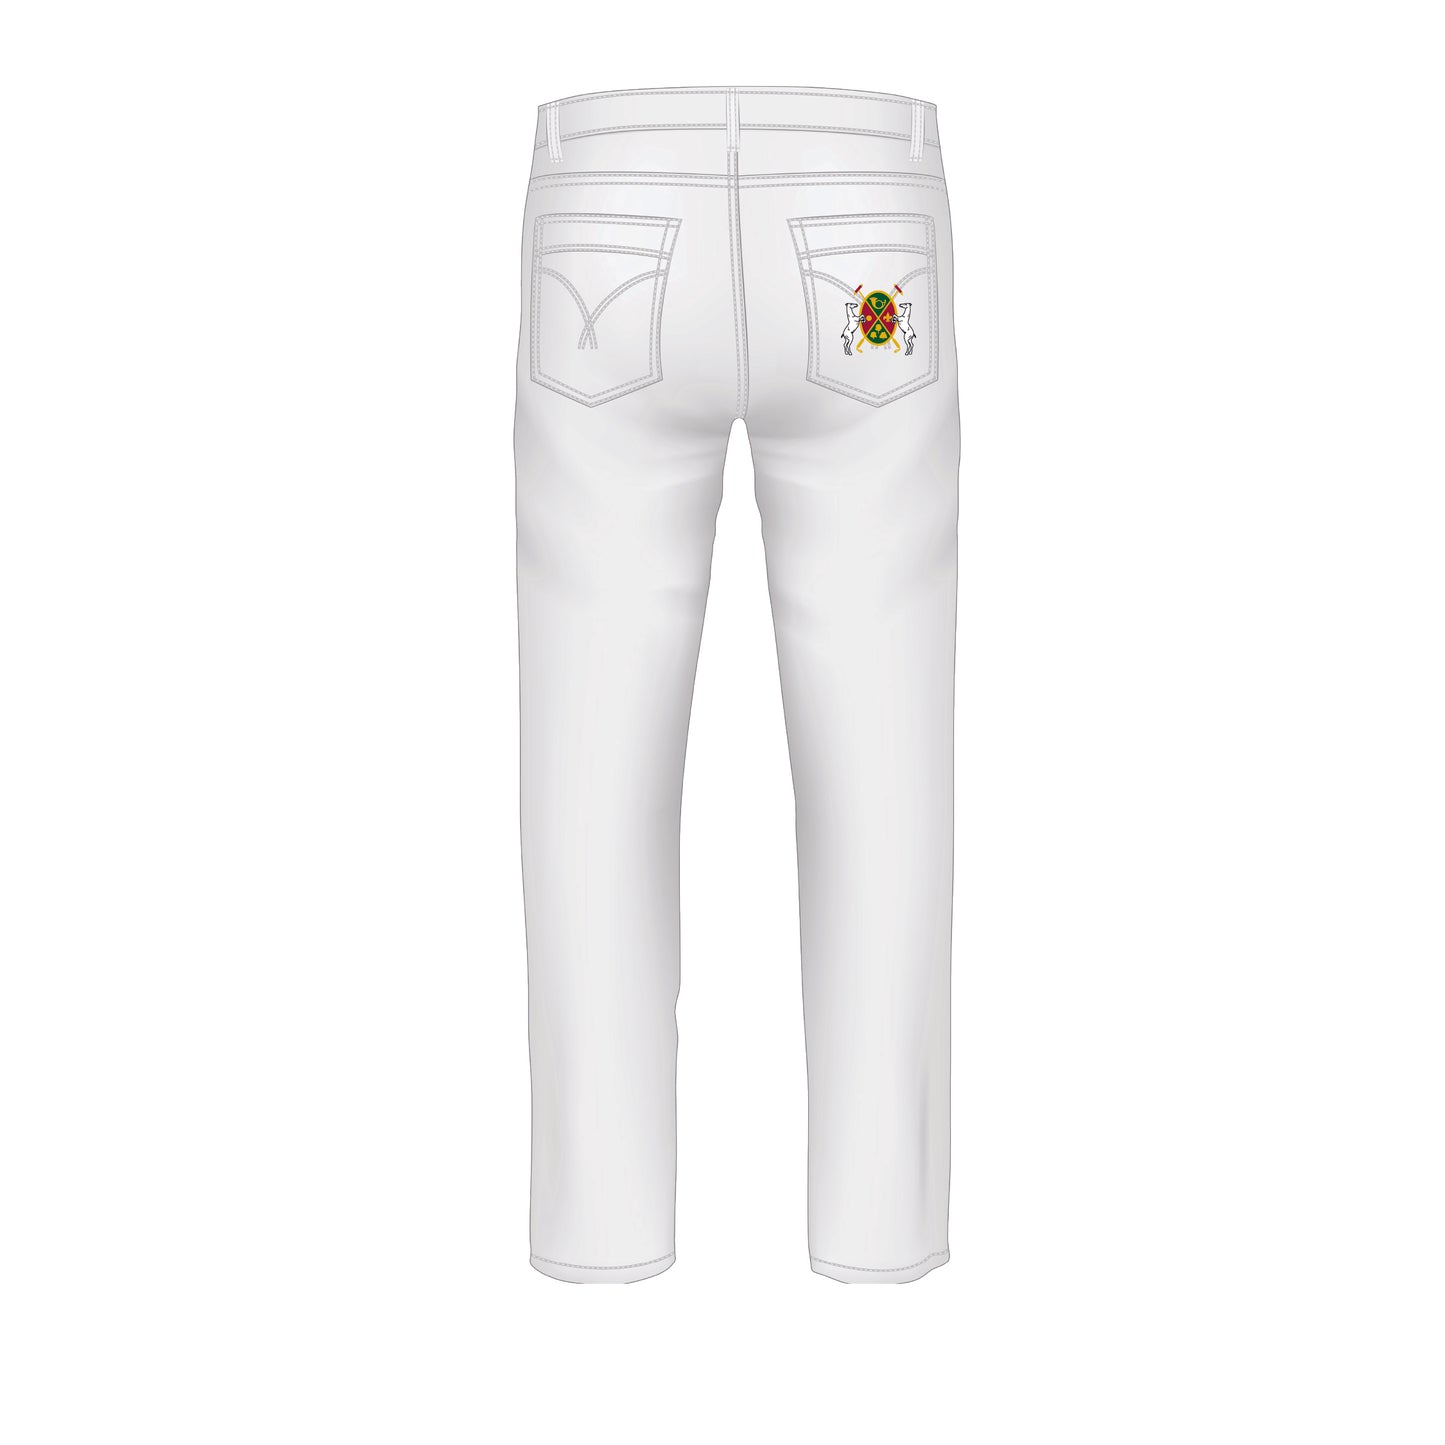 Polo Club de Chantilly White Jeans